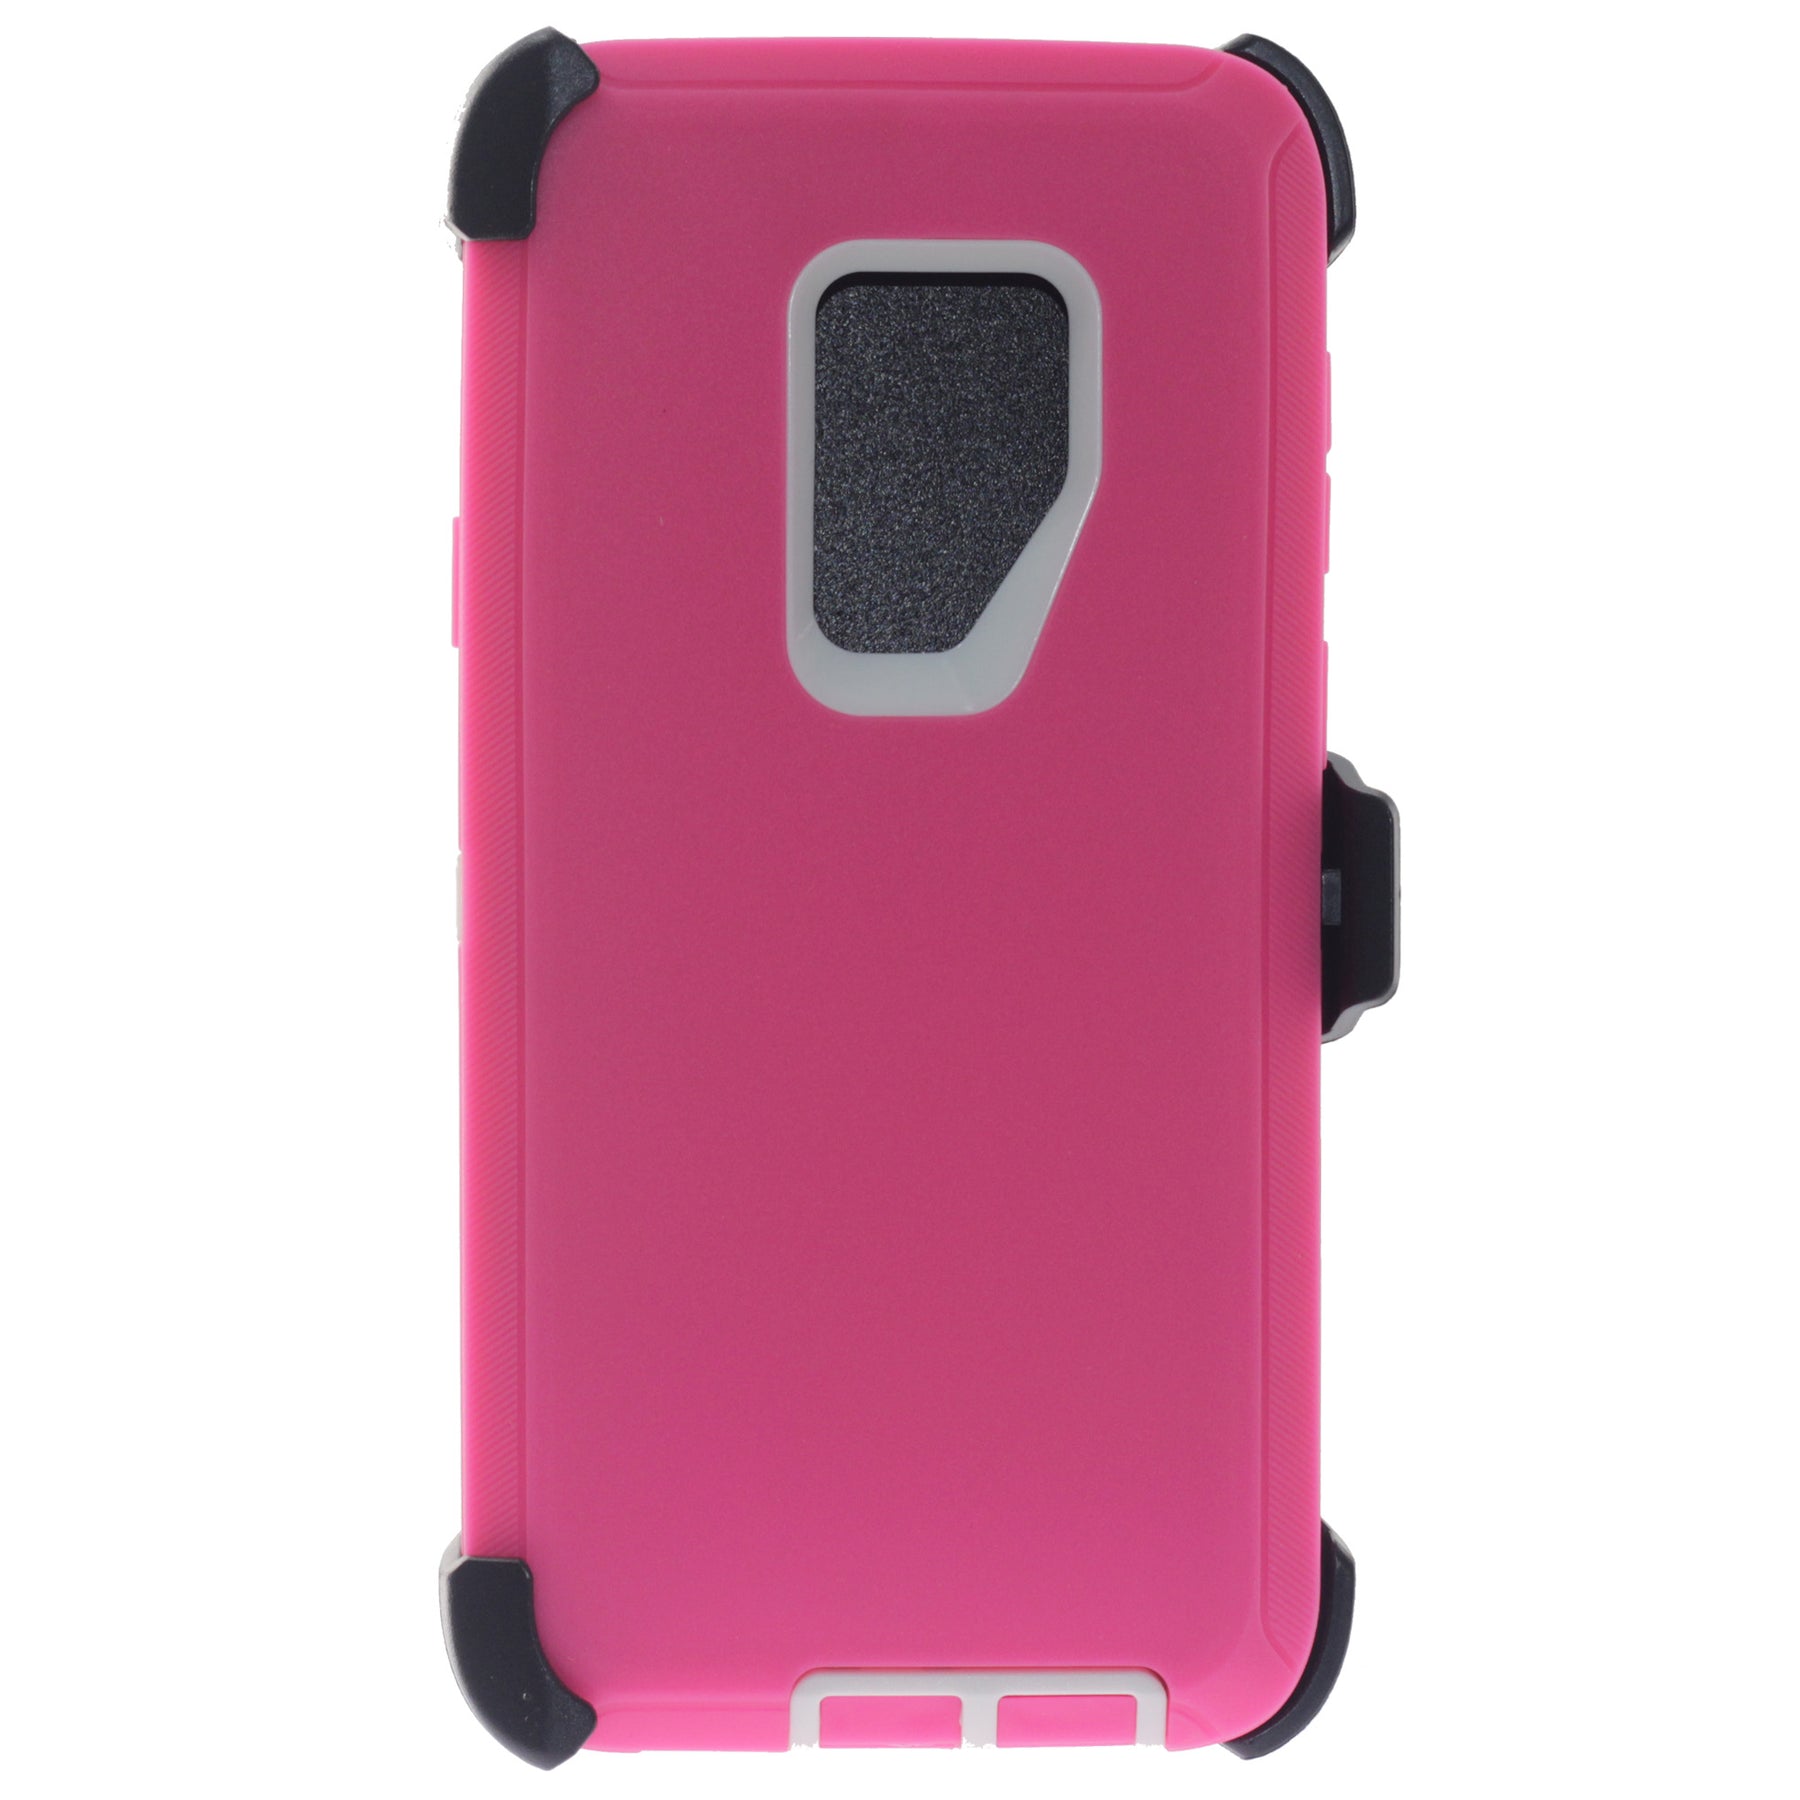 Samsung S9 Plus pink case